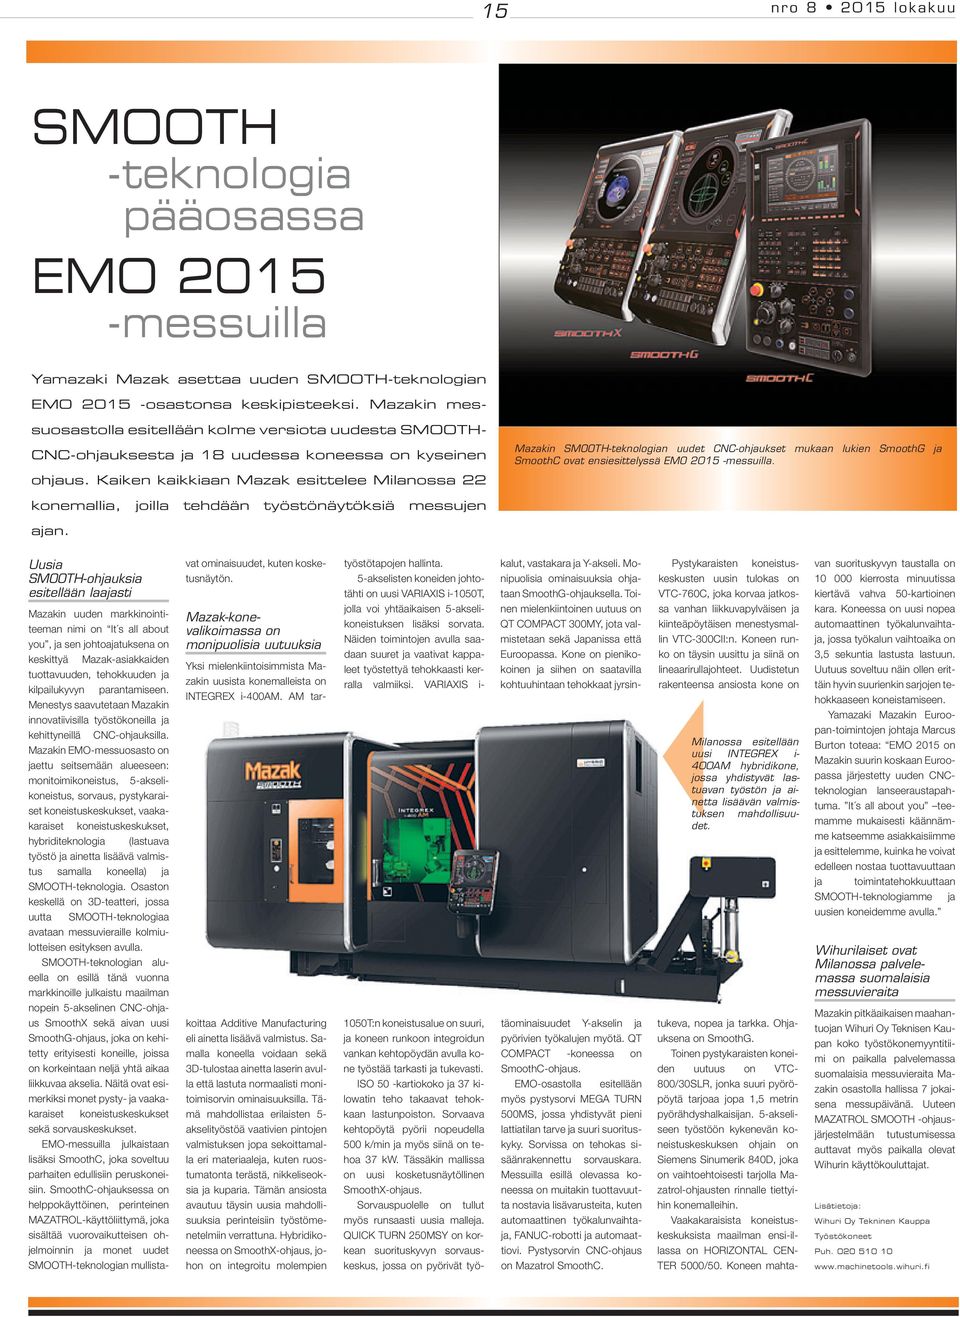 Kaiken kaikkiaan Mazak esittelee Milanossa 22 Mazakin SMOOTH-teknologian uudet CNC-ohjaukset mukaan lukien SmoothG ja SmoothC ovat ensiesittelyssä EMO 2015 -messuilla.